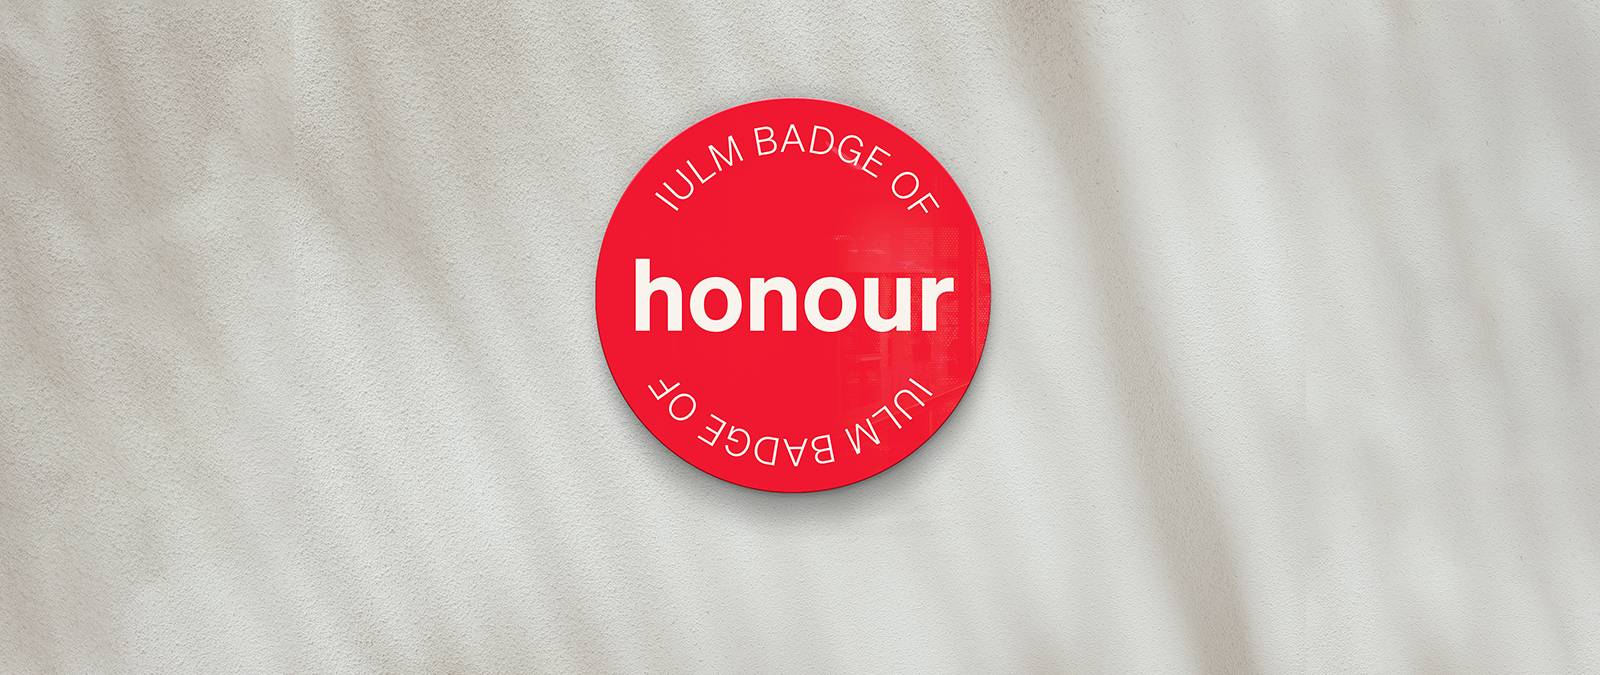 Badge of Honour